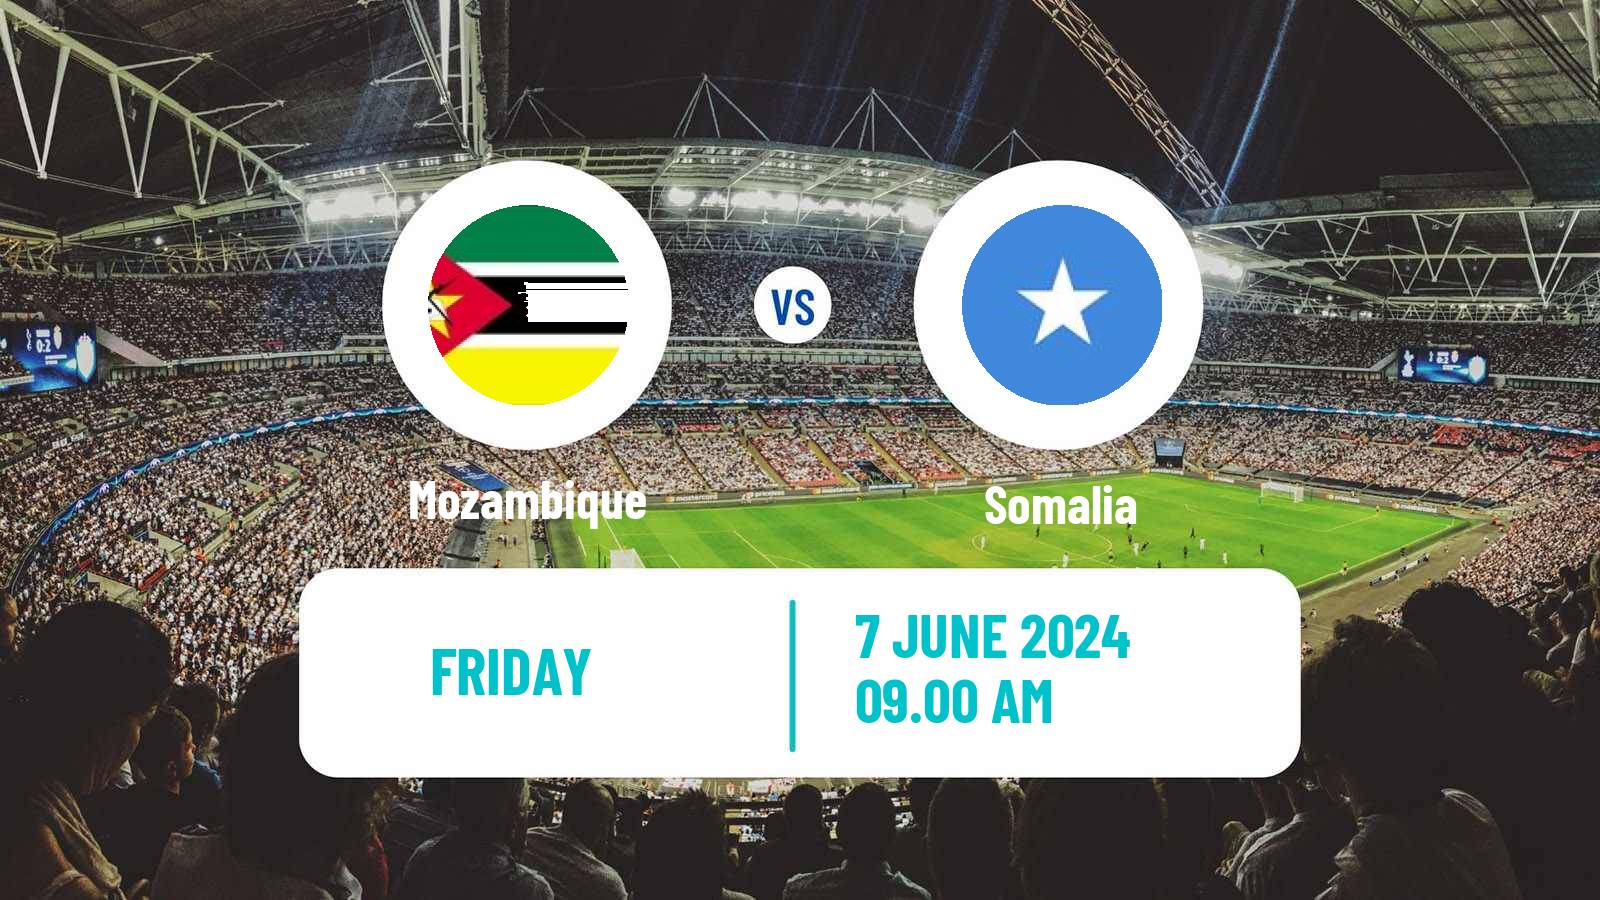 Soccer FIFA World Cup Mozambique - Somalia